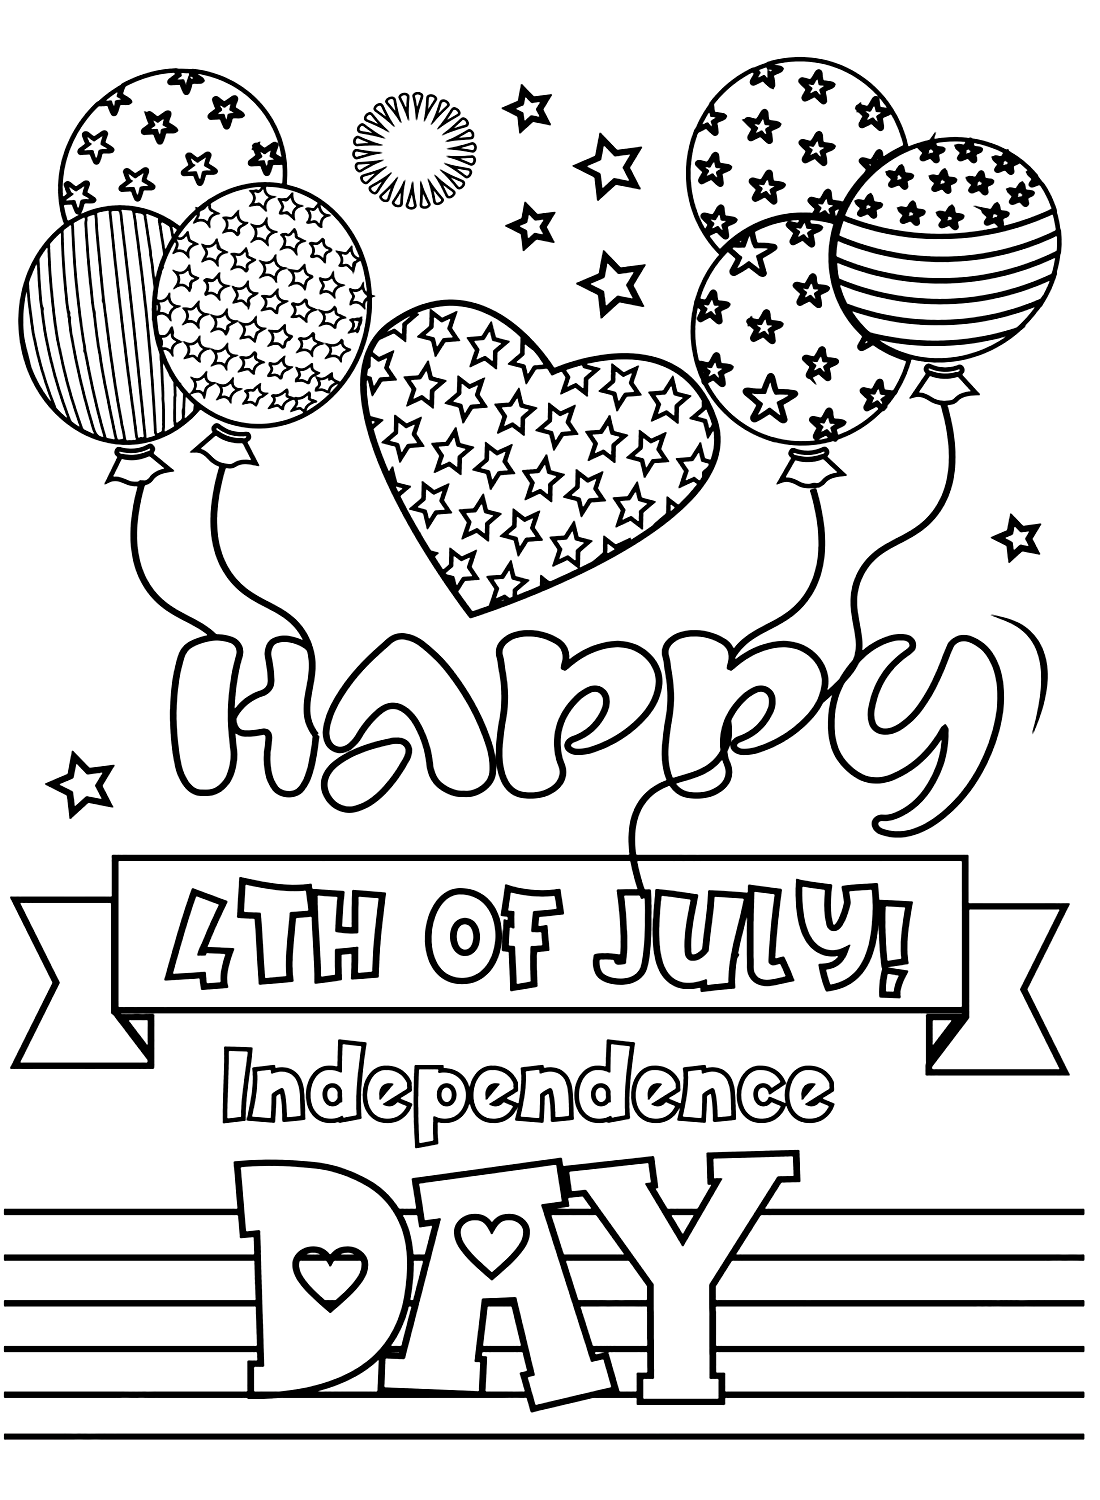 عيد استقلال سعيد في الرابع من يوليو من الرابع من يوليو